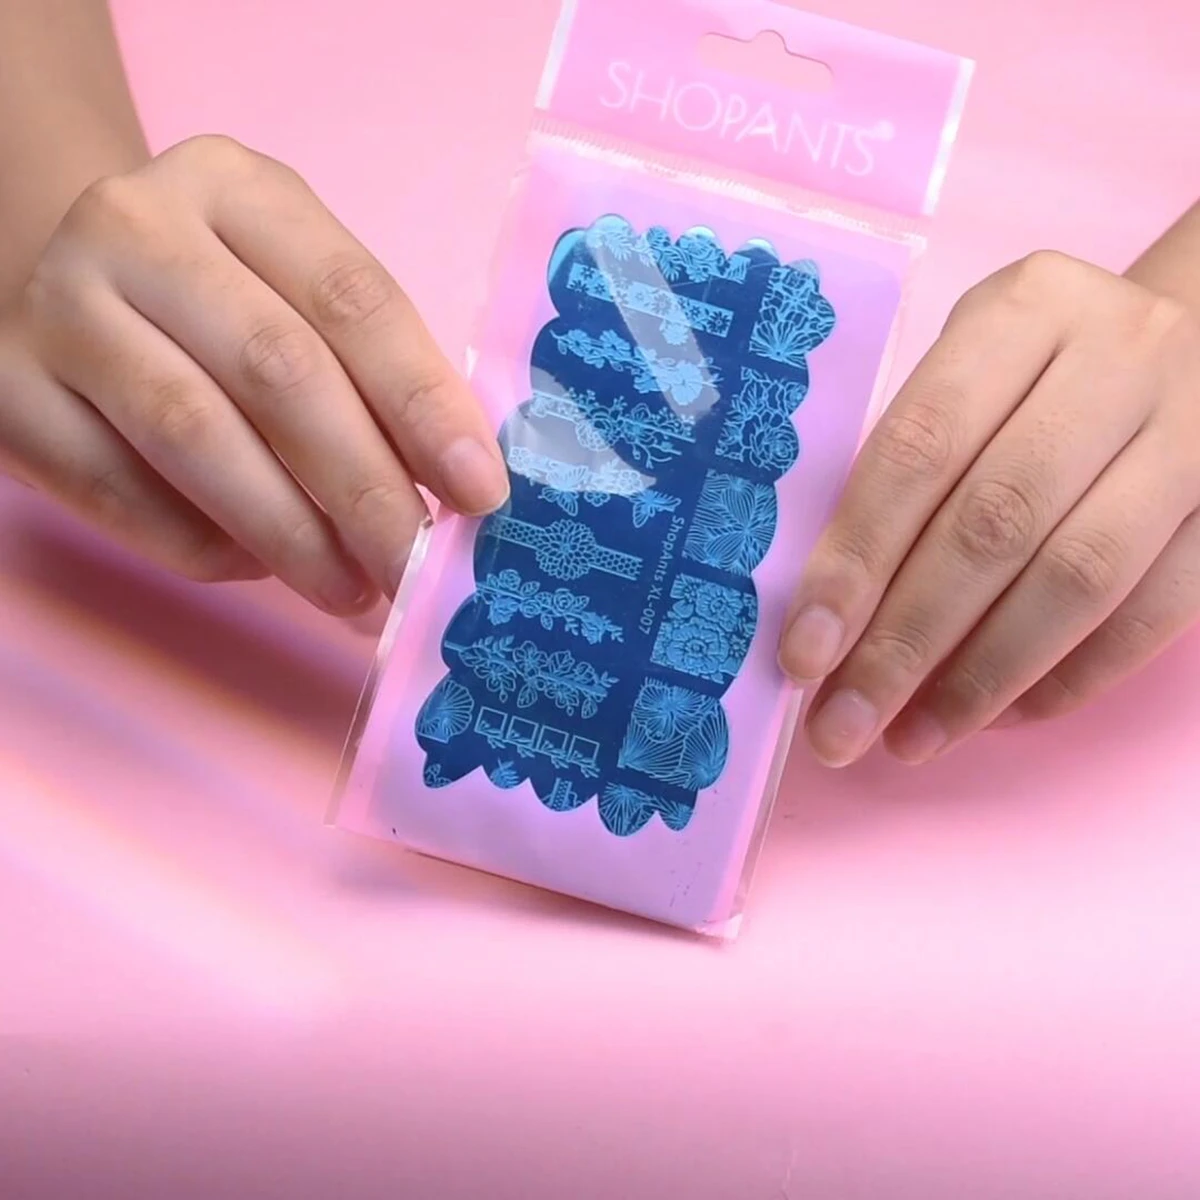 Шопанты 6*12 см прямоугольные Цветочные листья дизайн изображения ногтей шаблоны для открыток геометрические штамповки ногтей пластины трафареты для маникюра